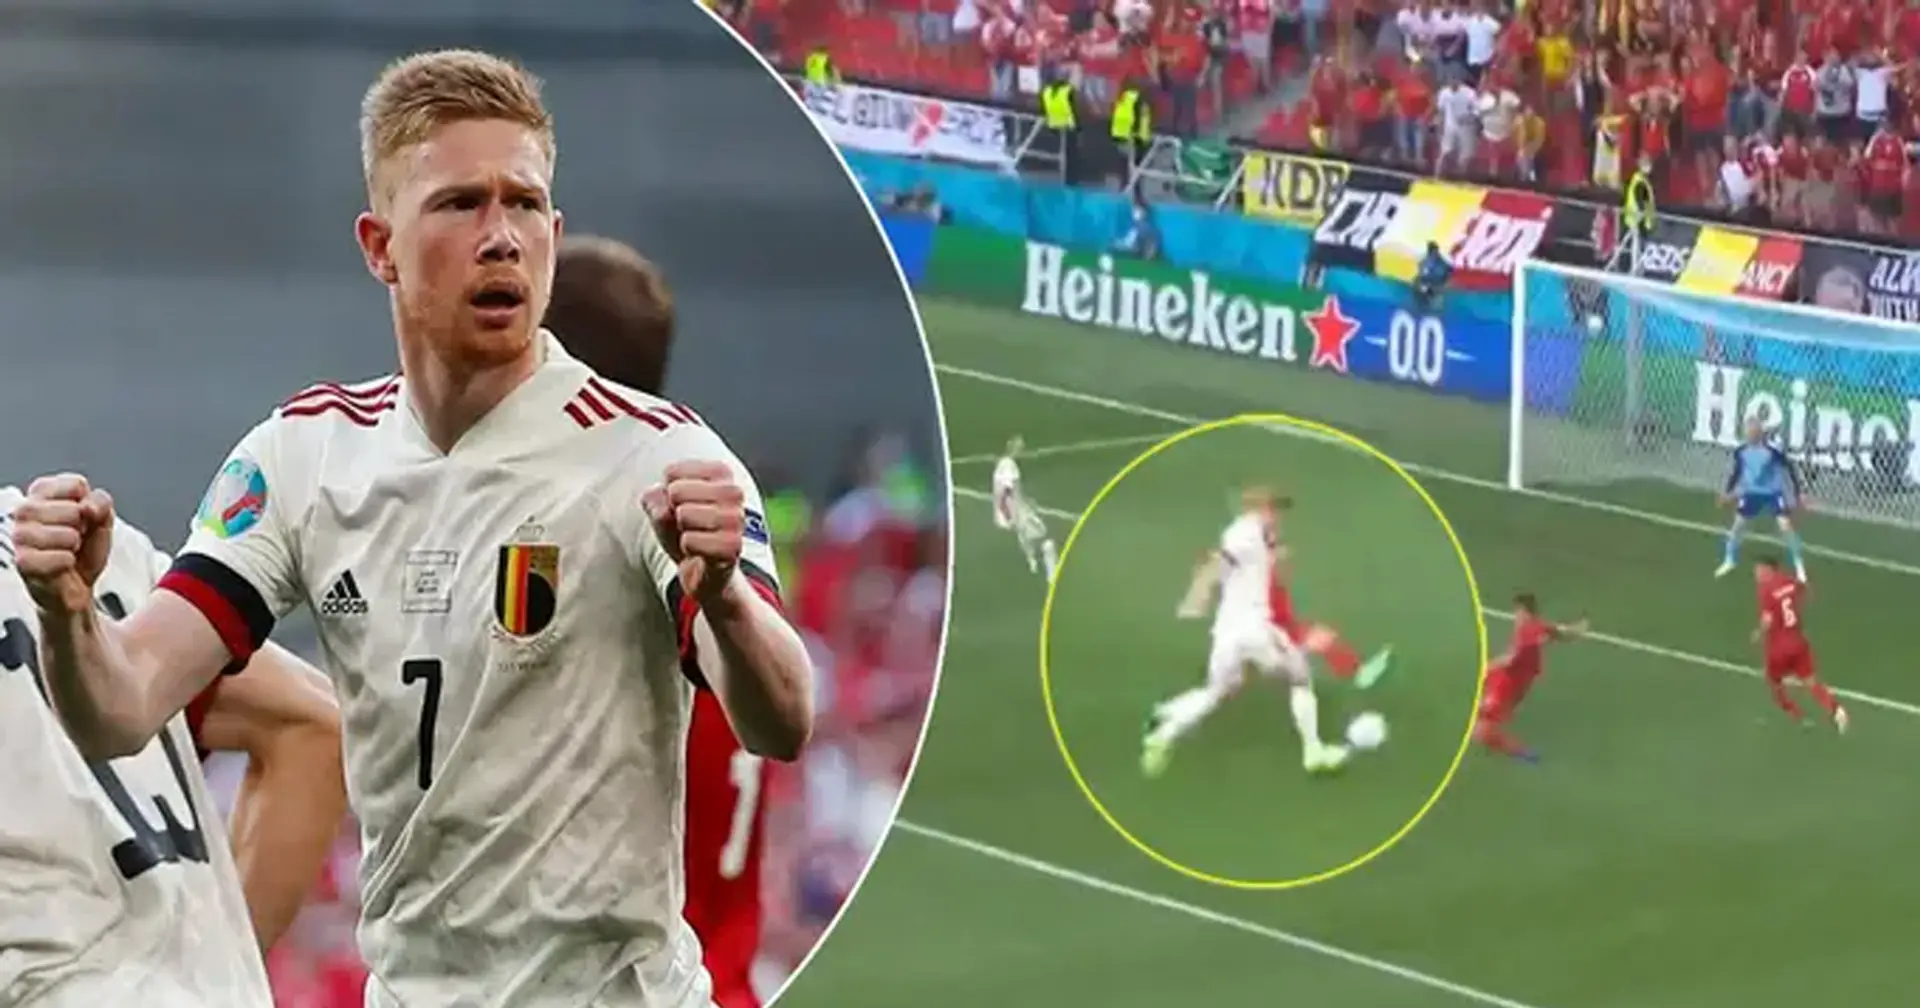 Rey de Bélgica: De Bruyne corta a 3 jugadores de Dinamarca y brinda una asistencia inteligente a Thorgan Hazard